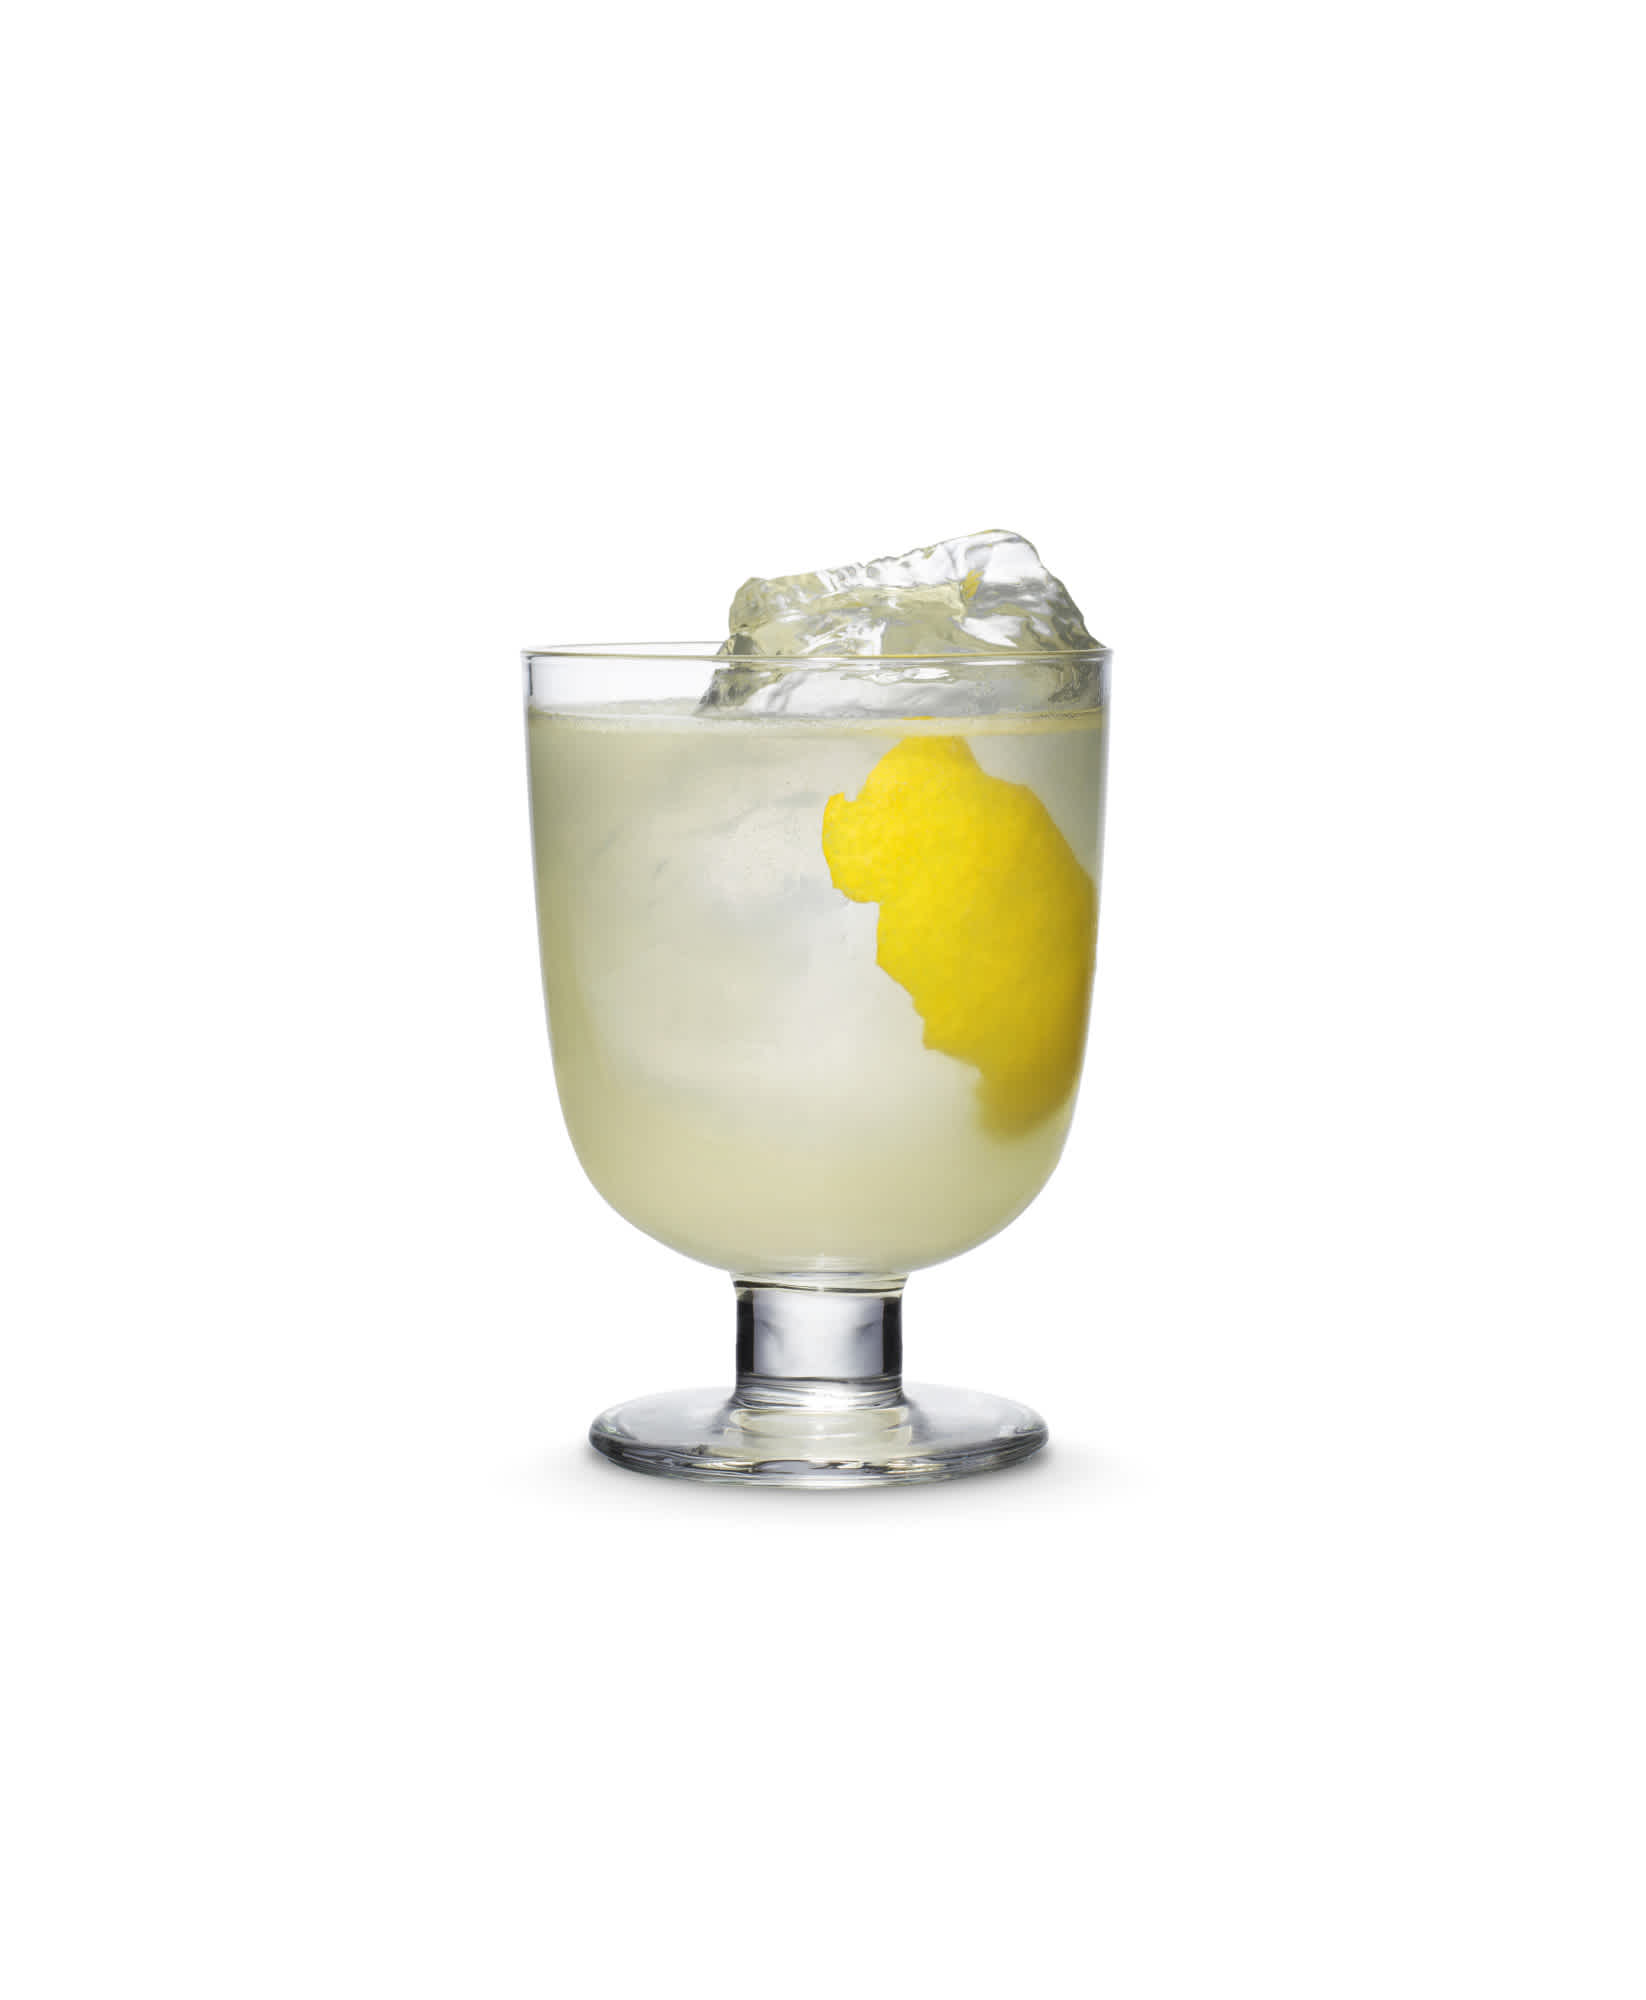 Tom Collins cocktail garnished with lemon peel